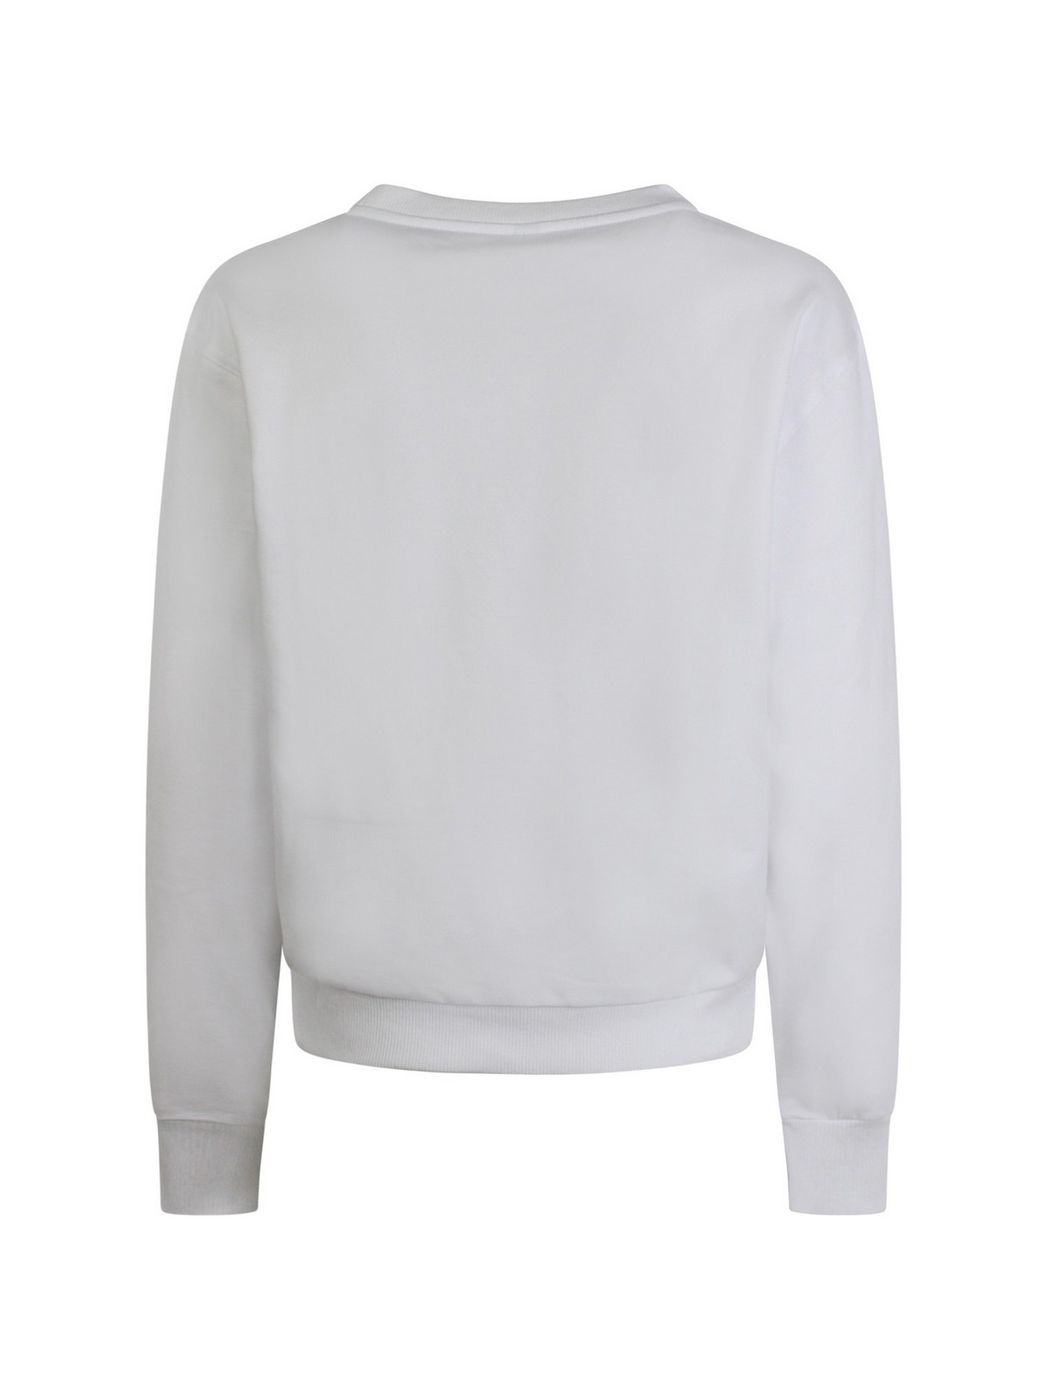 MOSCHINO UNDERWEAR Sweatshirt femme ZUA1713 9004 0001 Blanc